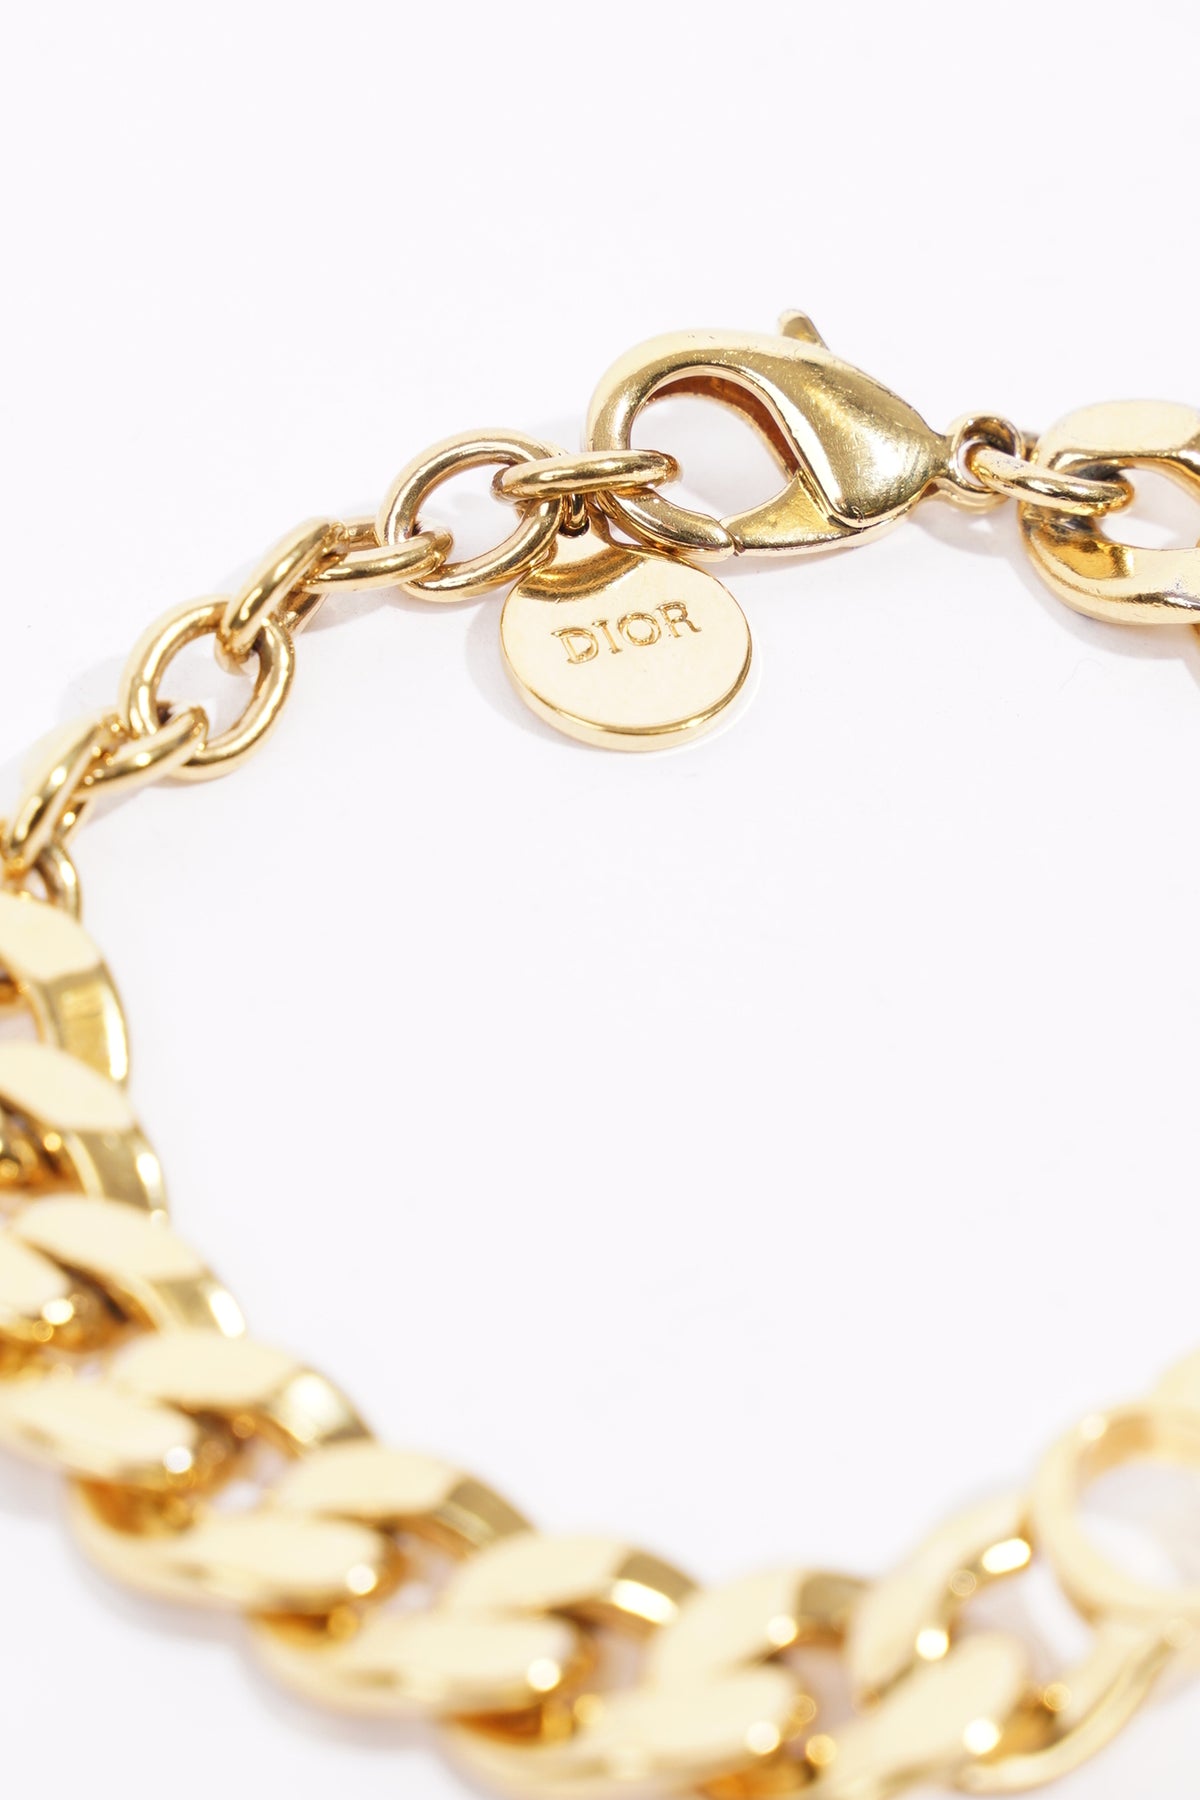 Sell Christian Dior Danseuse Etoile Ring - Gold | HuntStreet.com